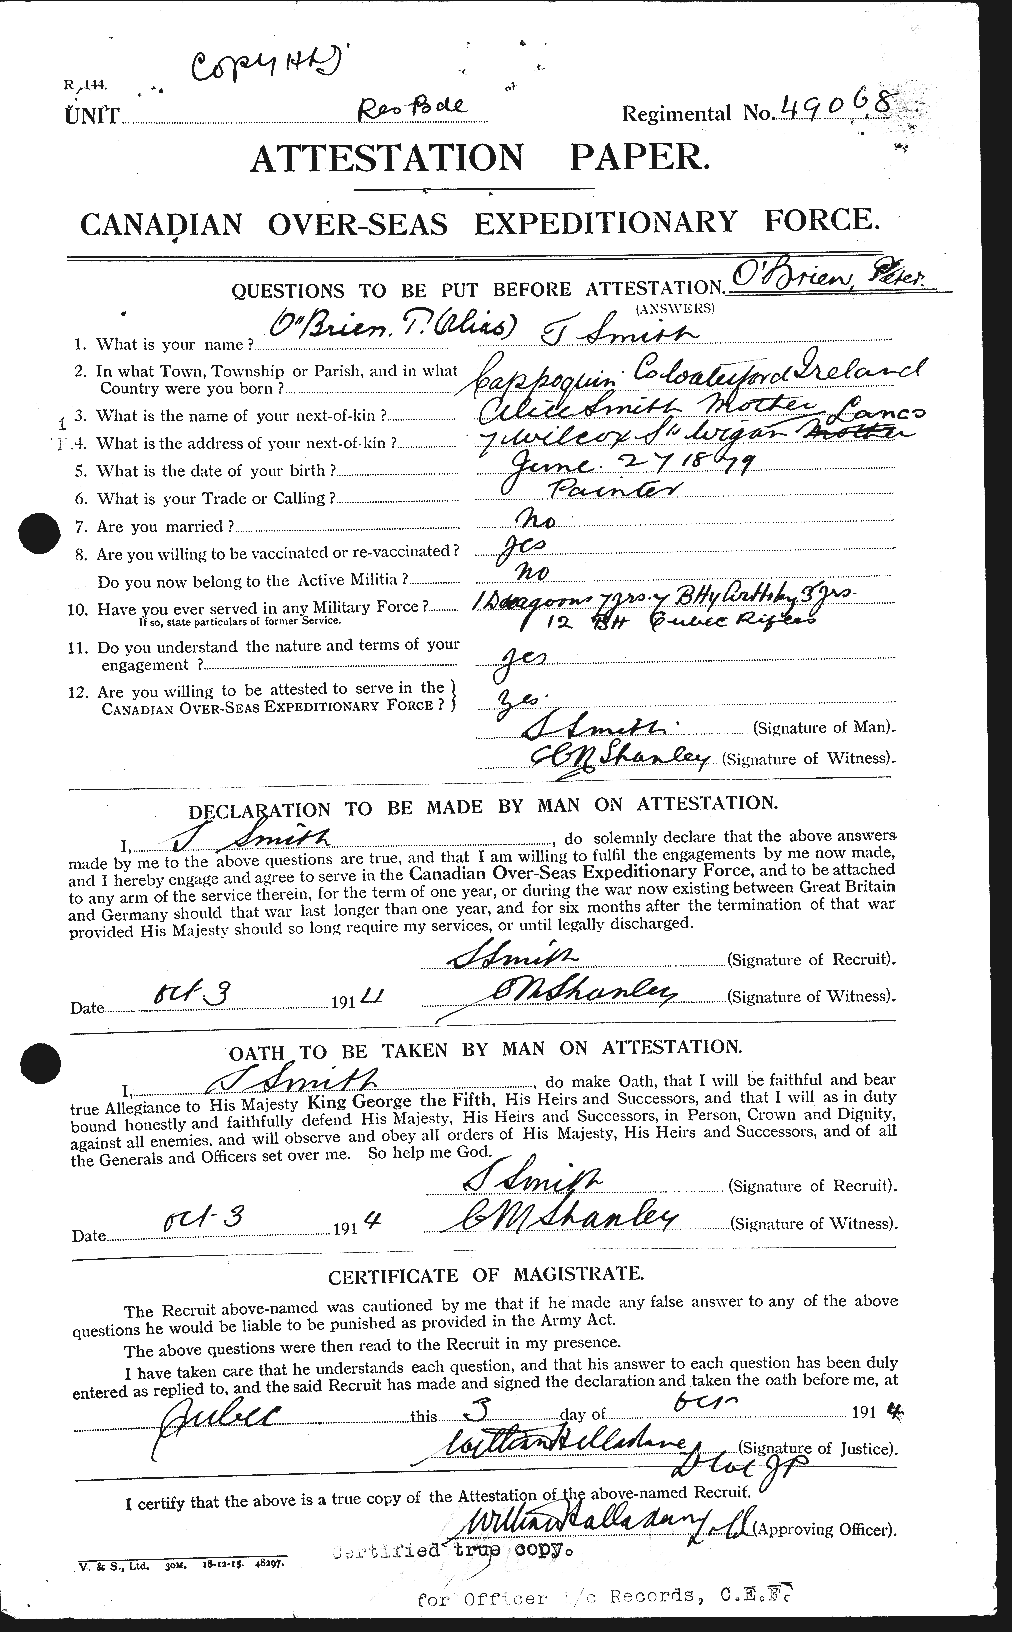 Dossiers du Personnel de la Première Guerre mondiale - CEC 554923a